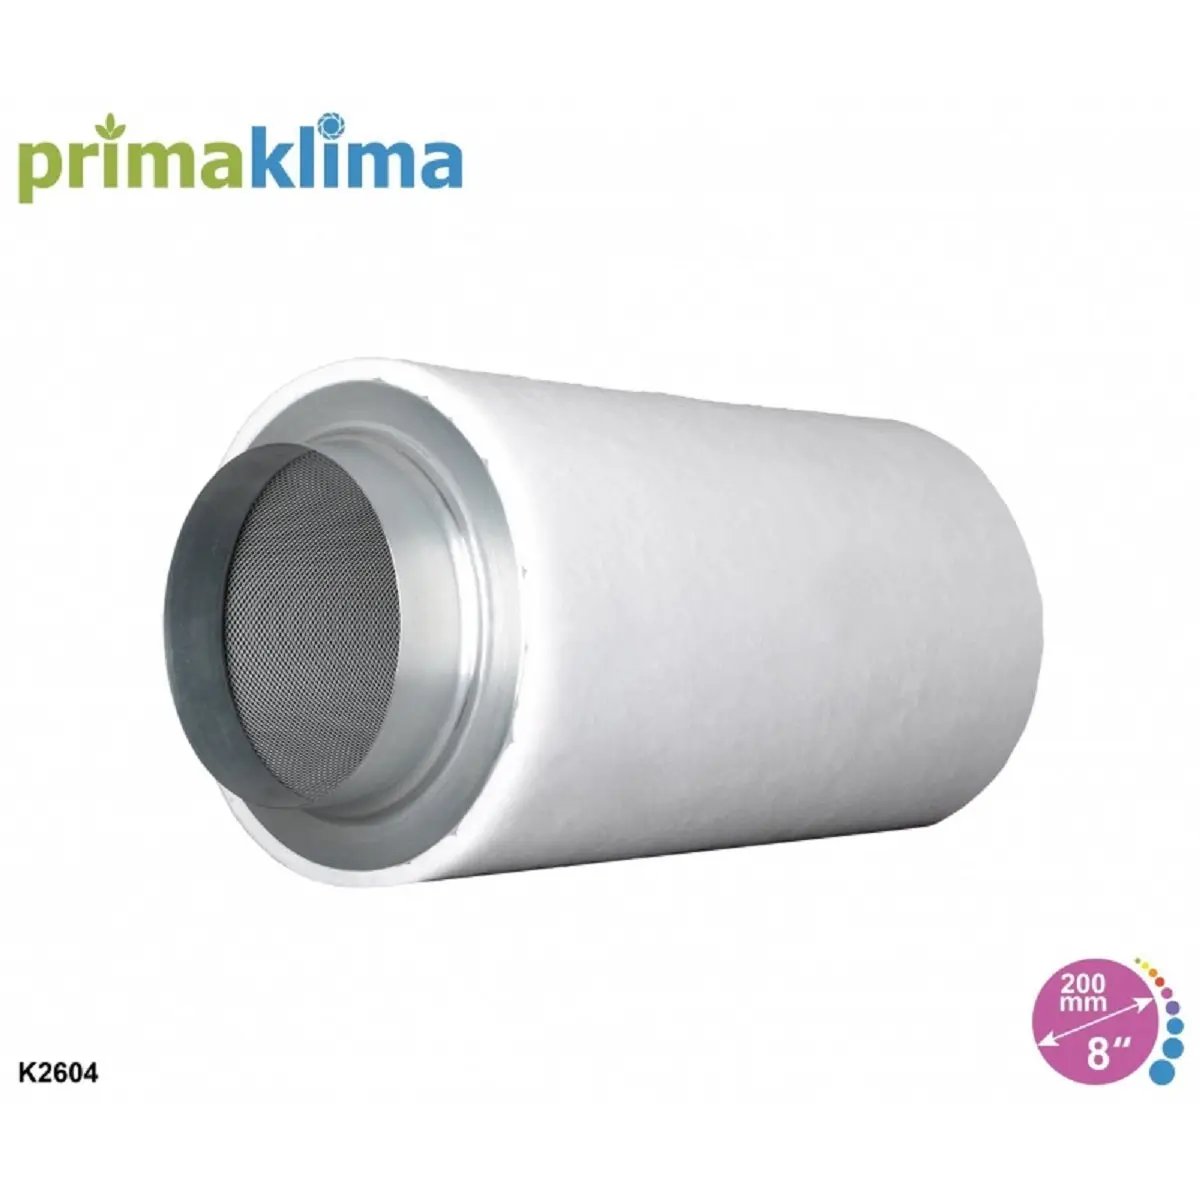 Le filtre à charbon pour odeur Prima Klima de 200mm de diamètre